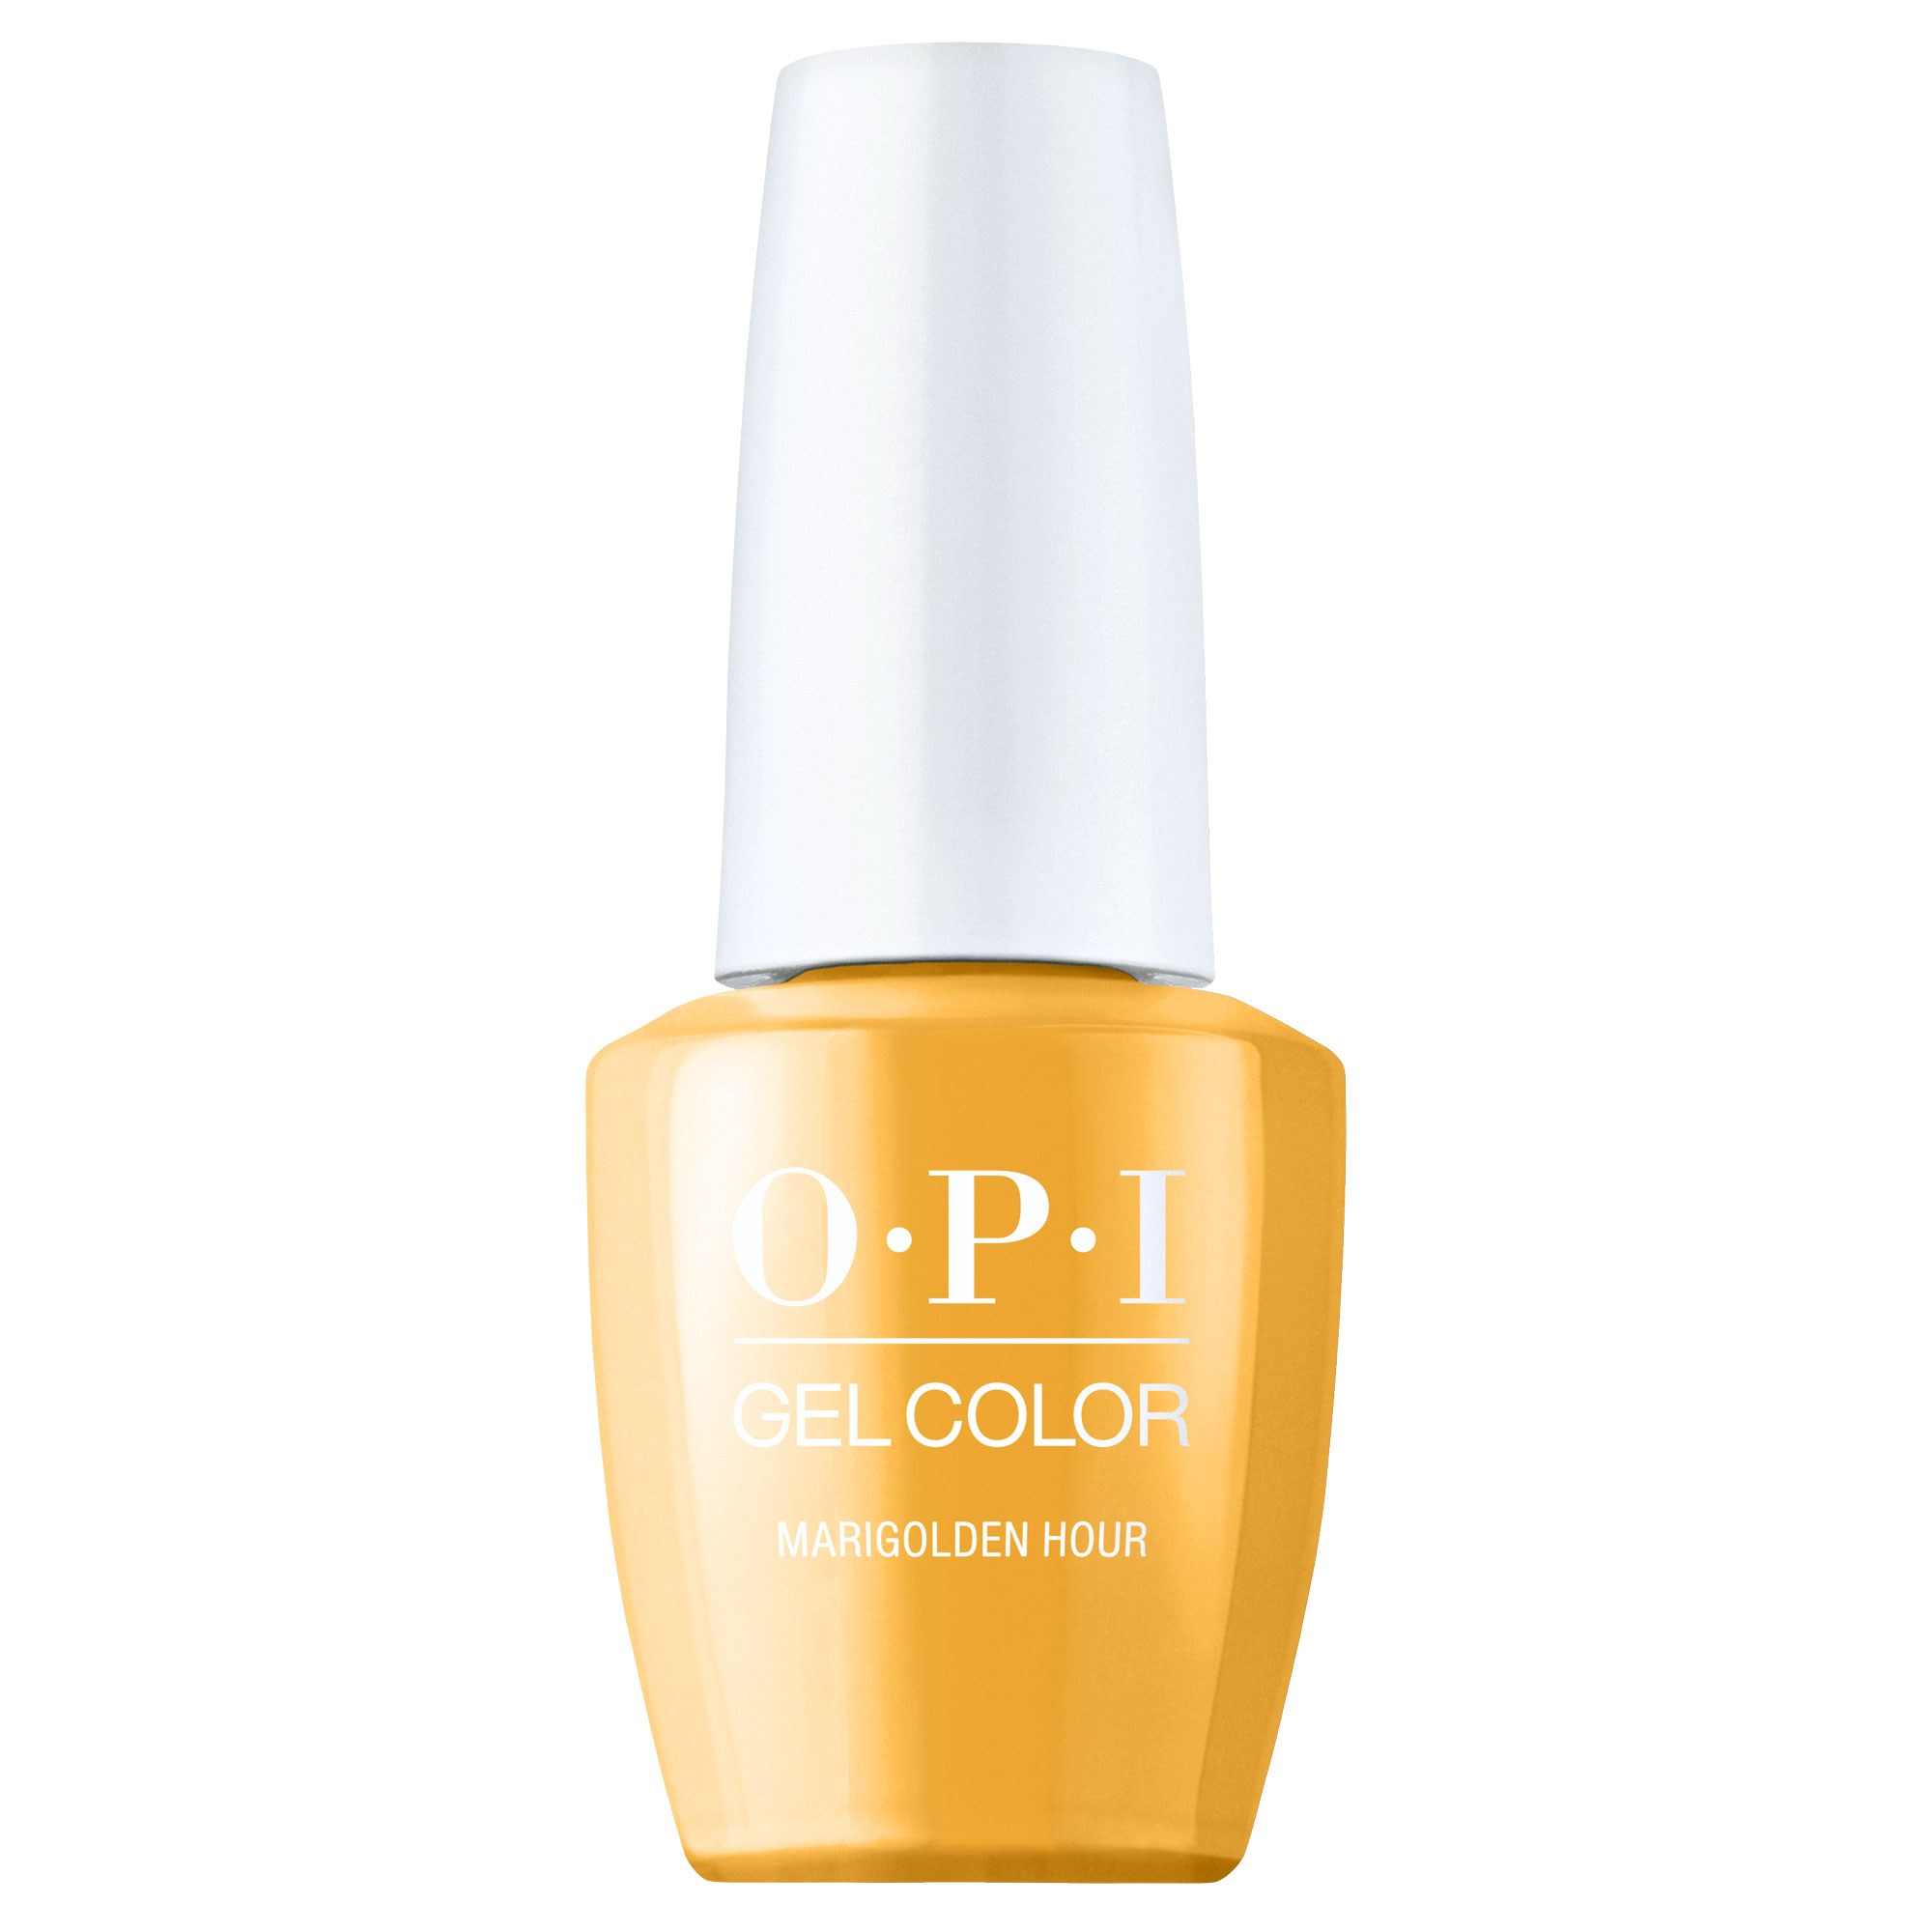 OPI Gel Color 360 - Marigolden Hour